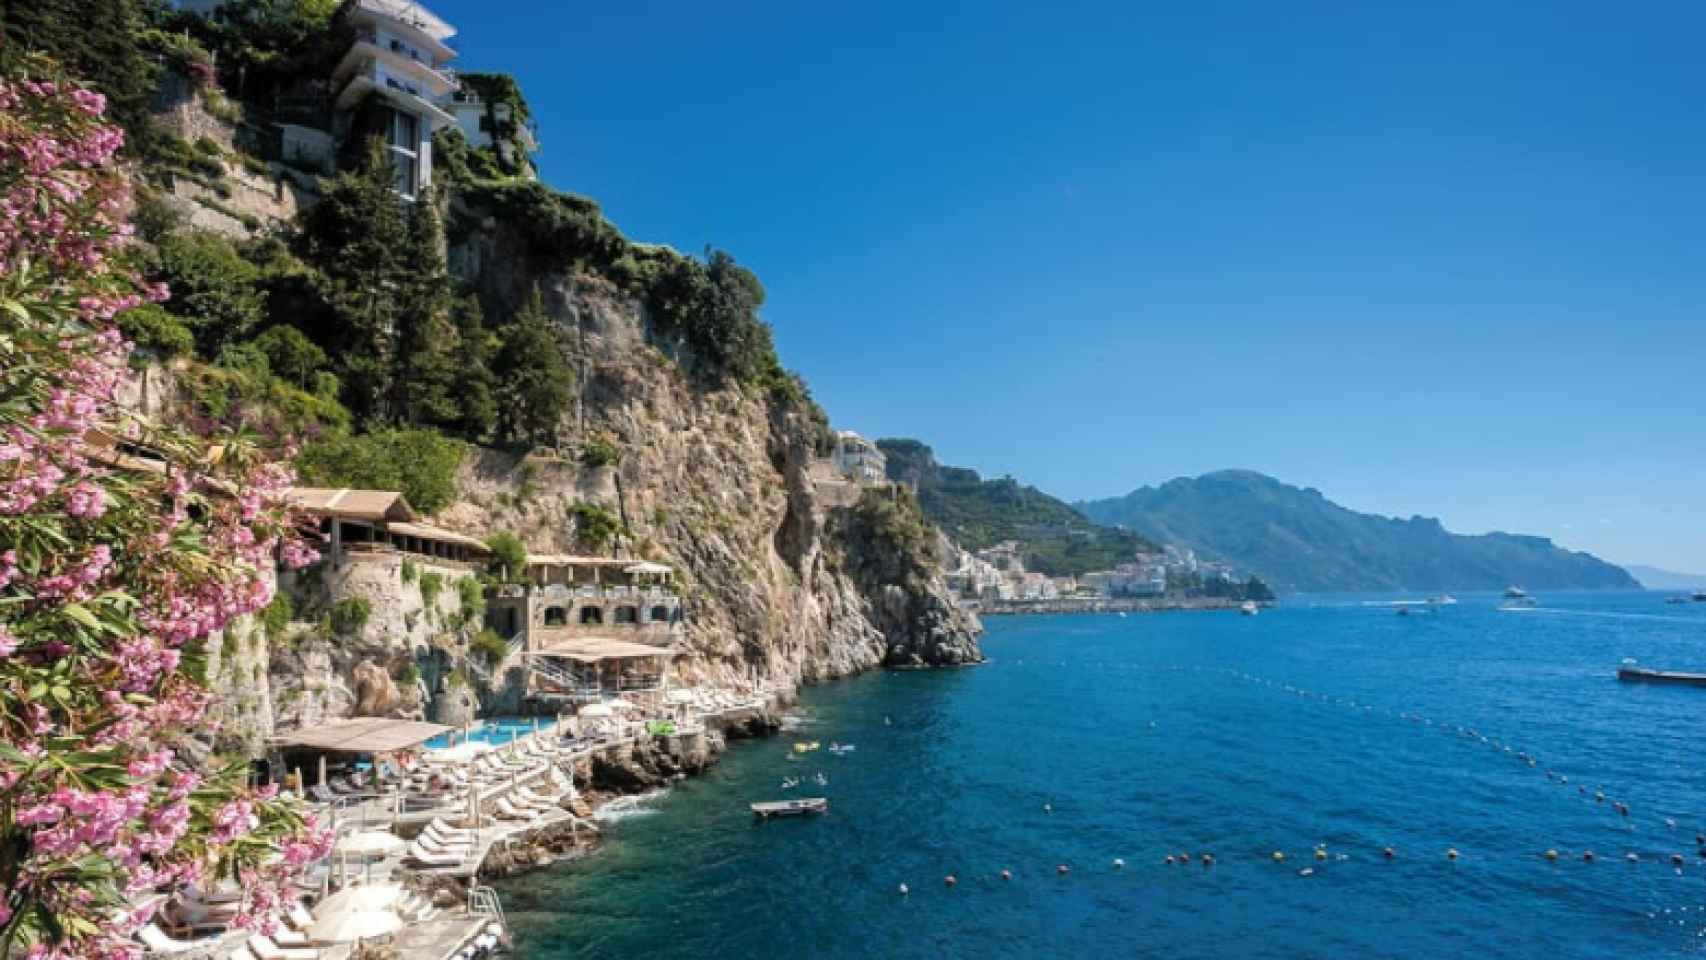 El hotel donde Beatriz de York se ha alojado tiene vistas al mar Tirreno.